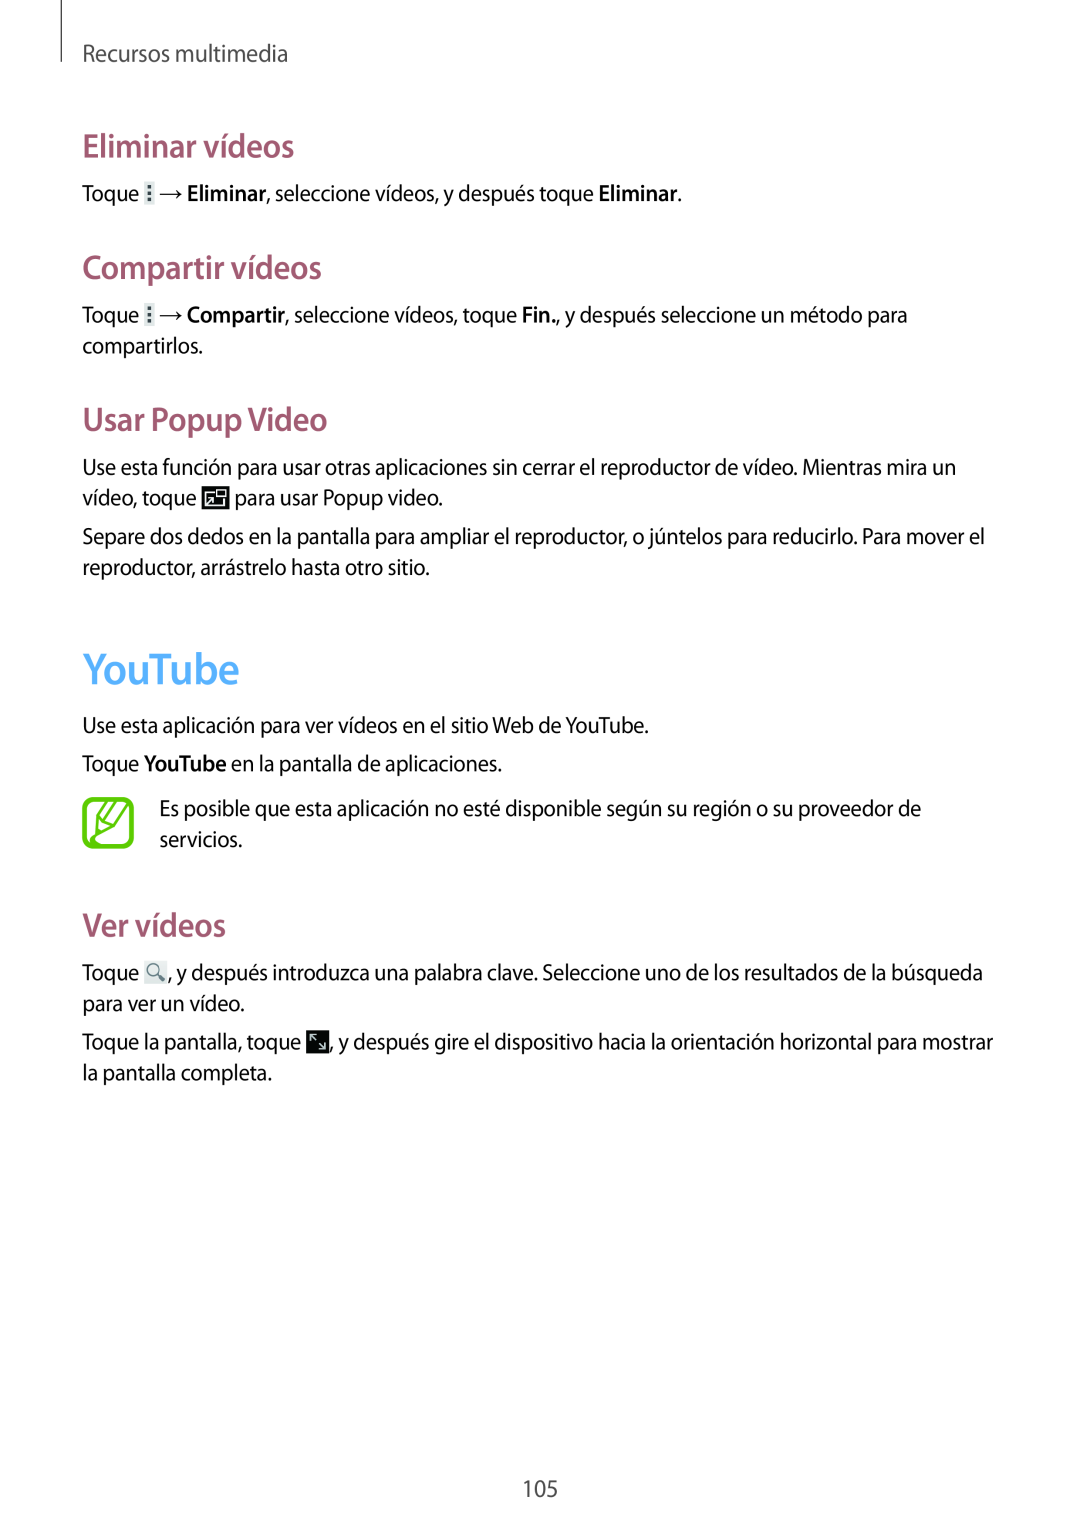 Samsung SM-T320NZWATPH manual YouTube, Eliminar vídeos, Compartir vídeos, Usar Popup Video, Ver vídeos, Recursos multimedia 